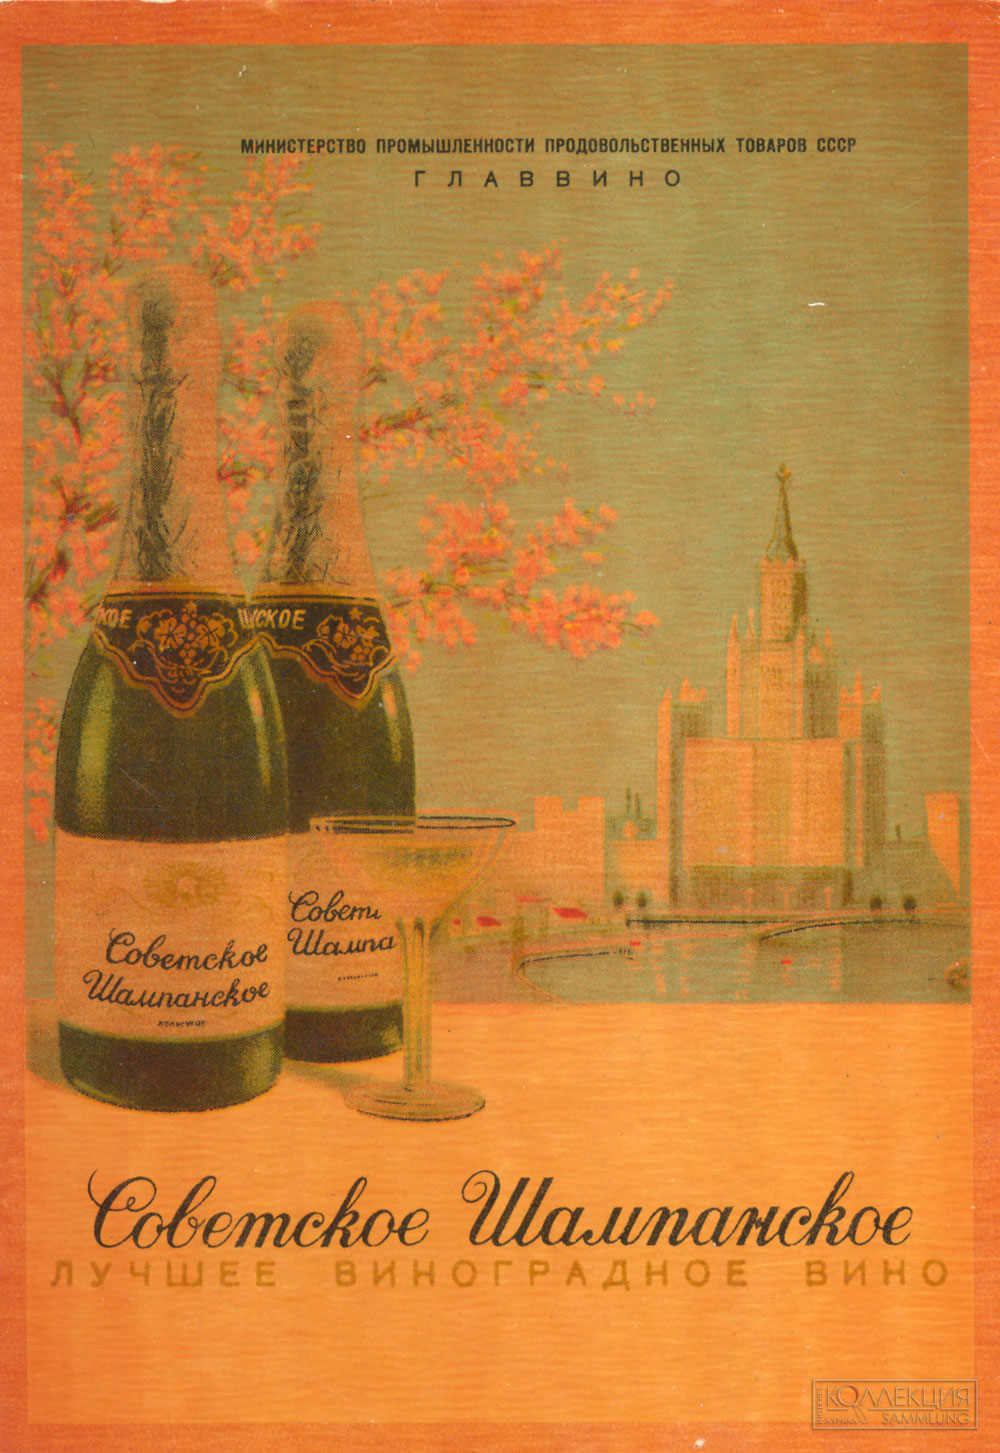 Лучшие сорта винограда, созревающего на Кавказе, в Крыму, Узбекистане и Молдавии идут на приготовление Советского шампанского. Союзпищепромреклама, 1953